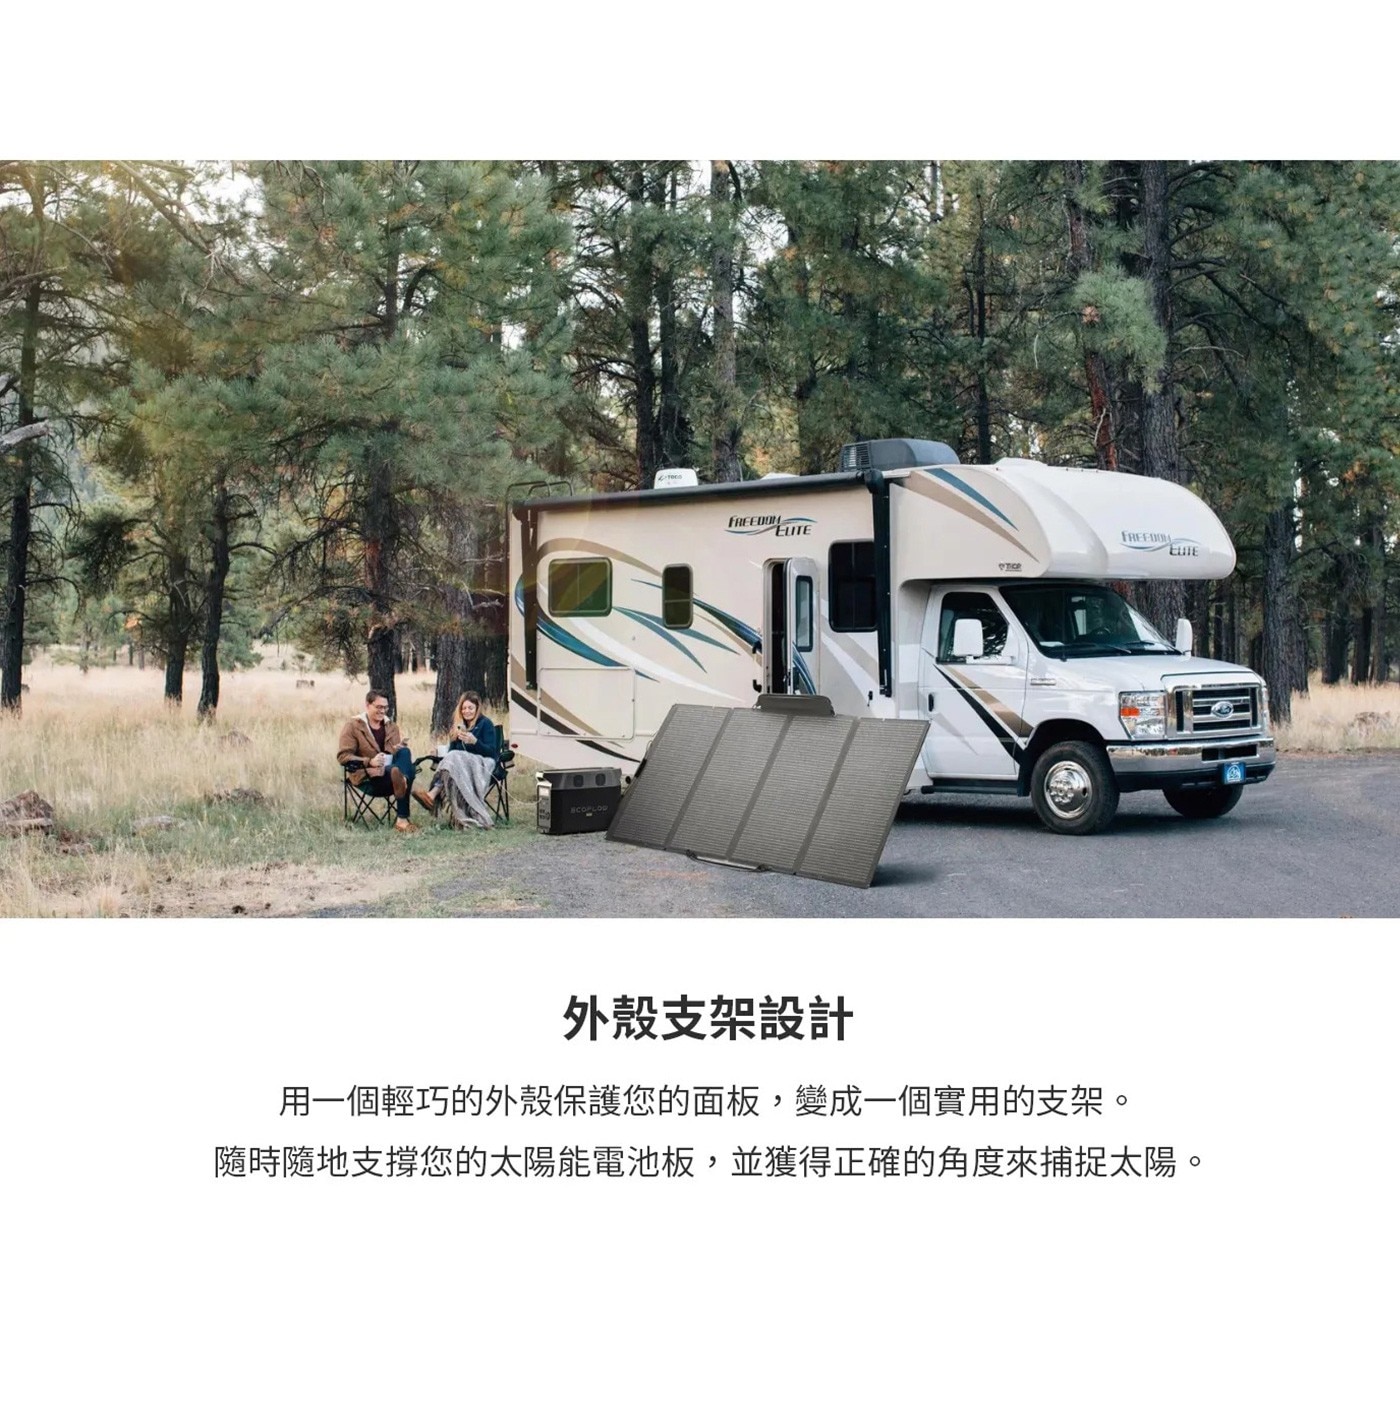 正浩 400W 可攜式太陽能板戶外活動露營最佳選擇可摺疊設計和便攜肩帶可在旅途中輕鬆攜帶到您的露營地或存放在您的房車中